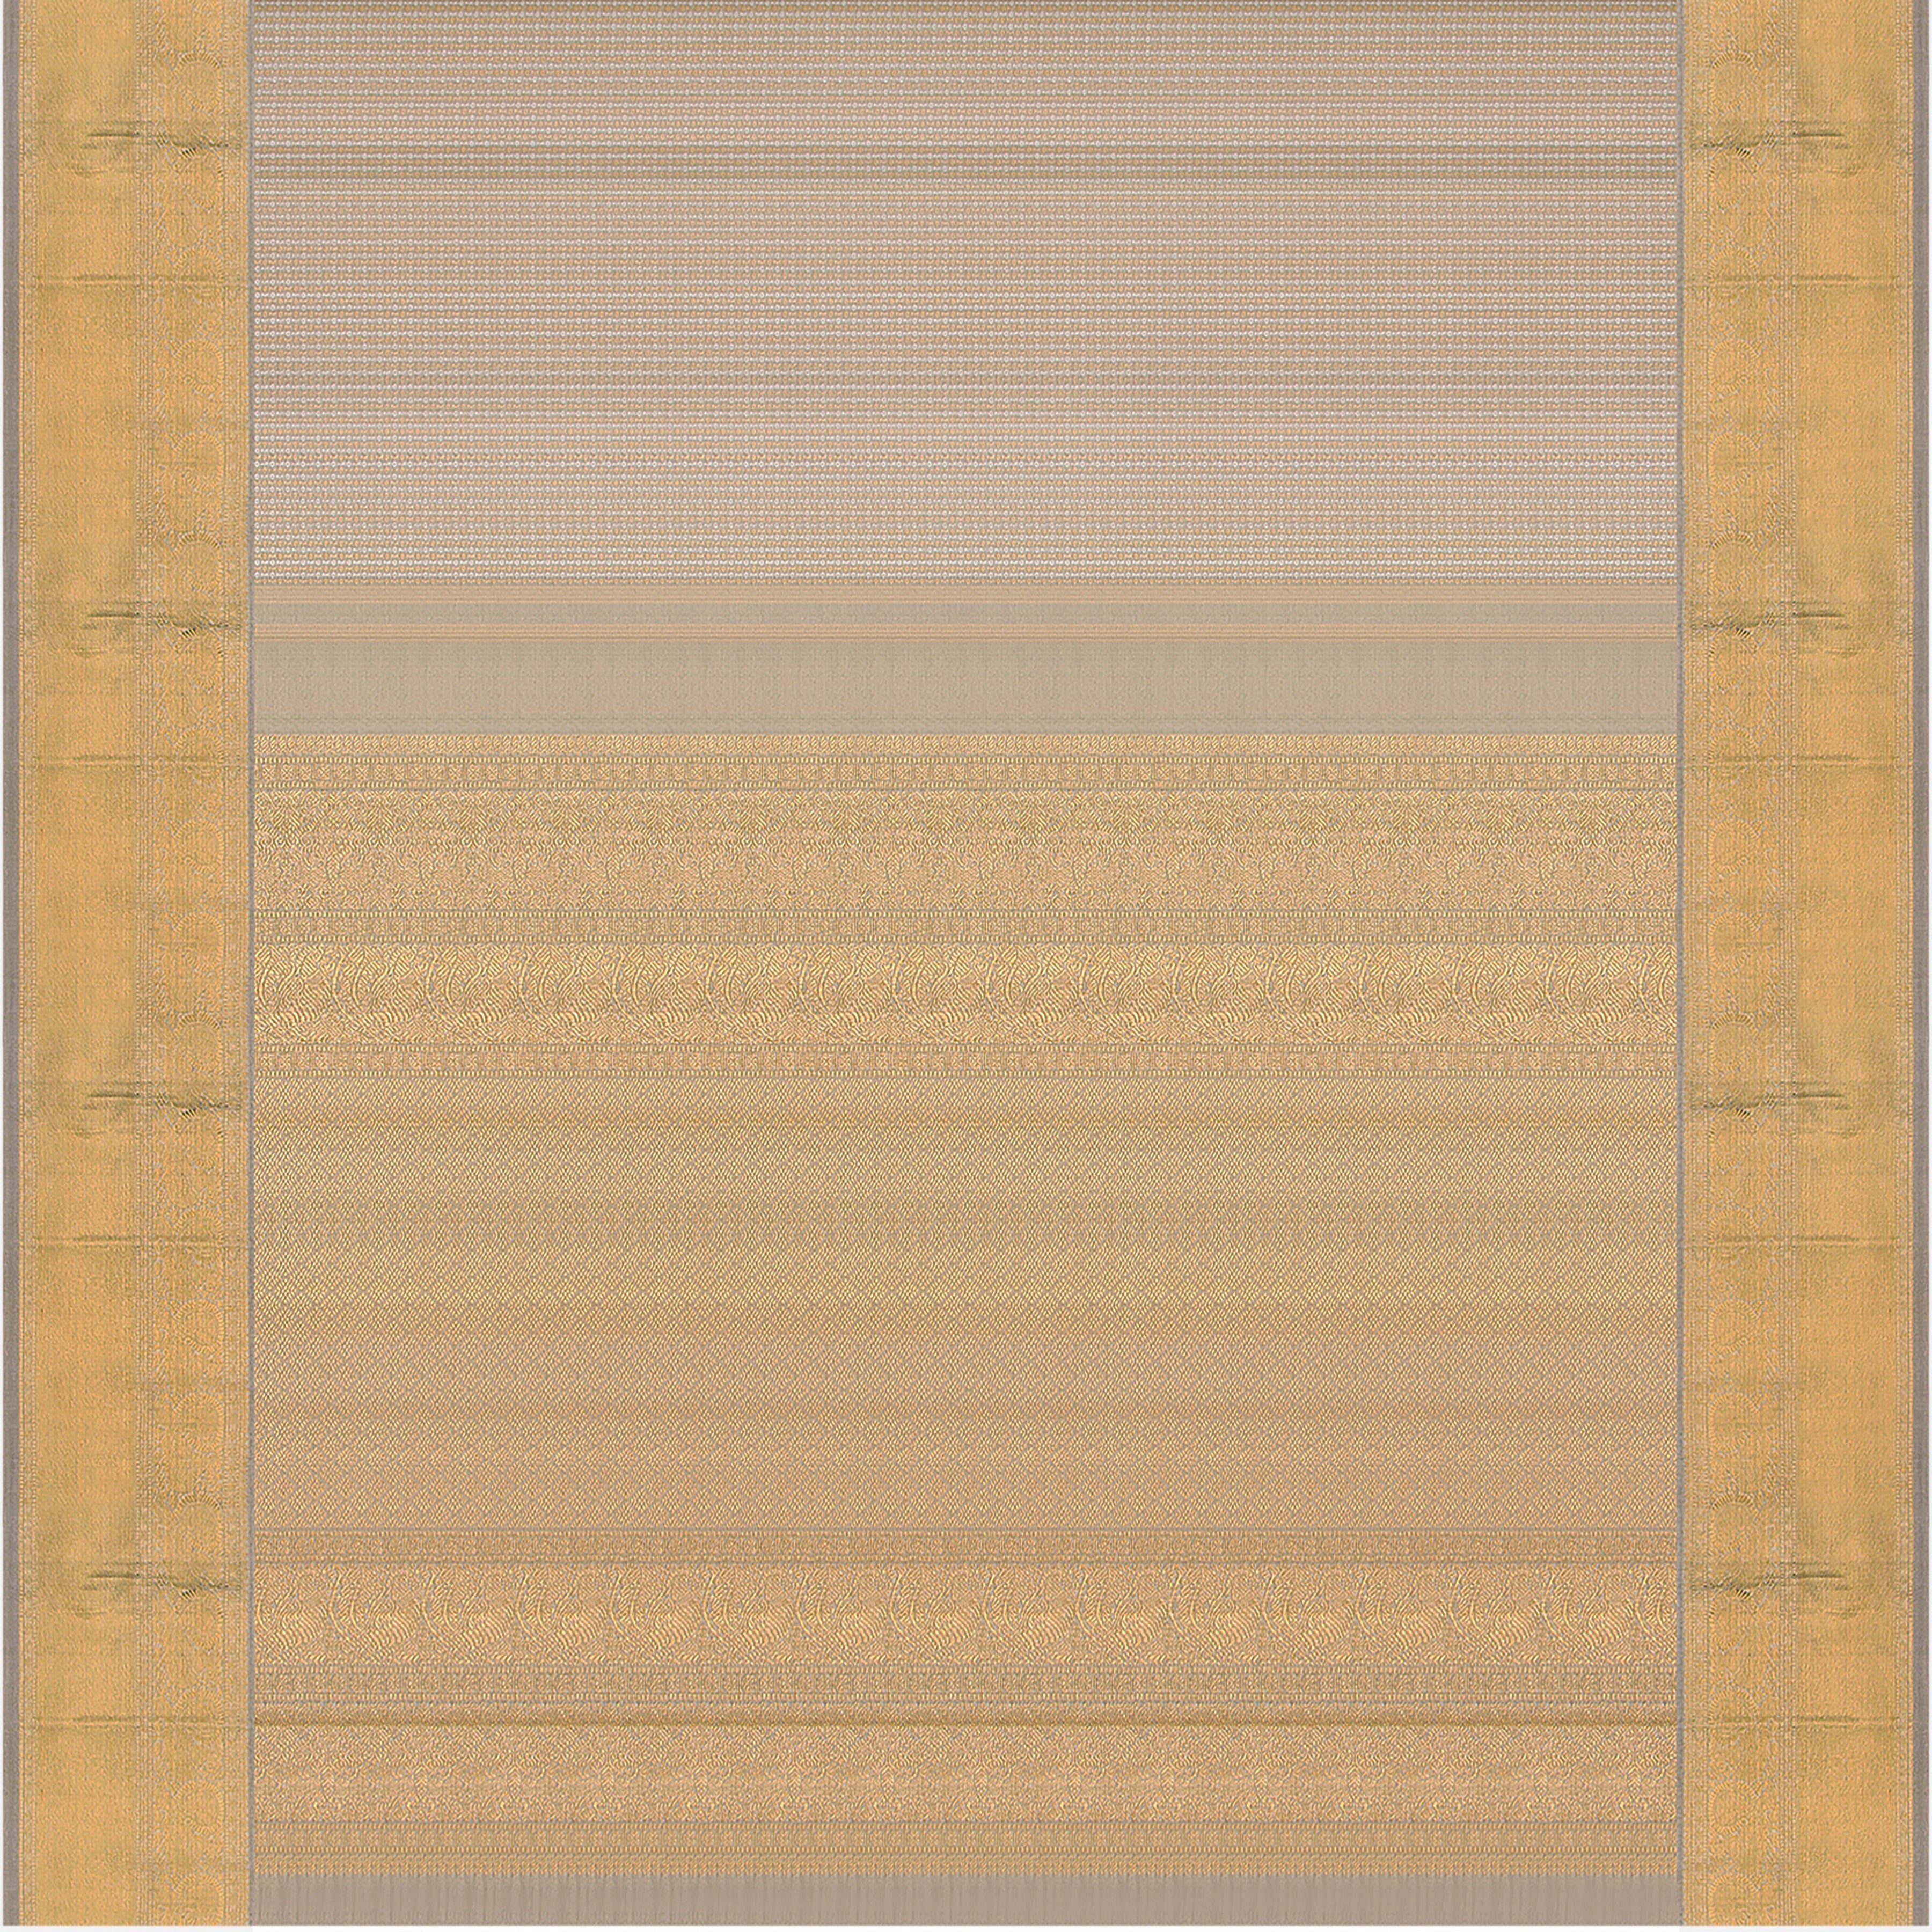 Kanakavalli Kanjivaram Silk Sari 23-110-HS001-02144 - Full View